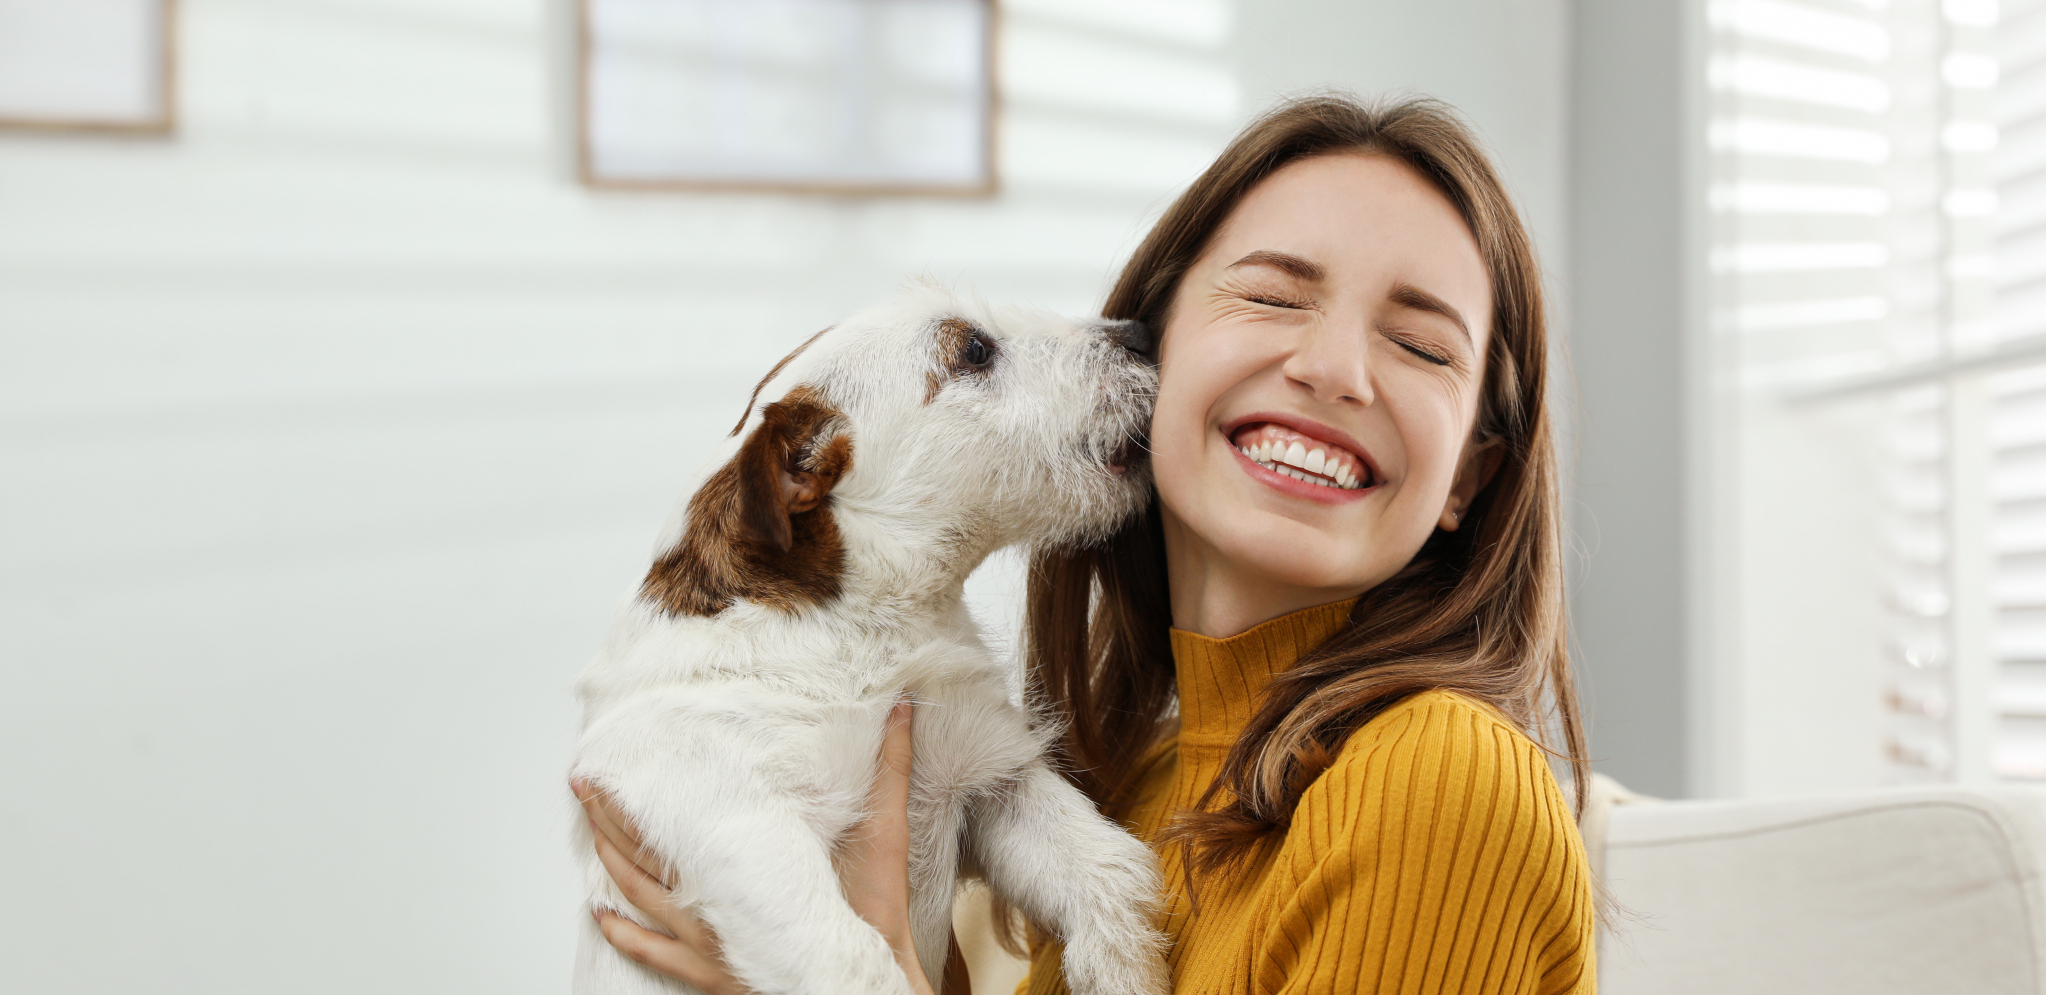 KADA MAŠU REPOM LEVO, DESNO Psi pokazuju da su srećni